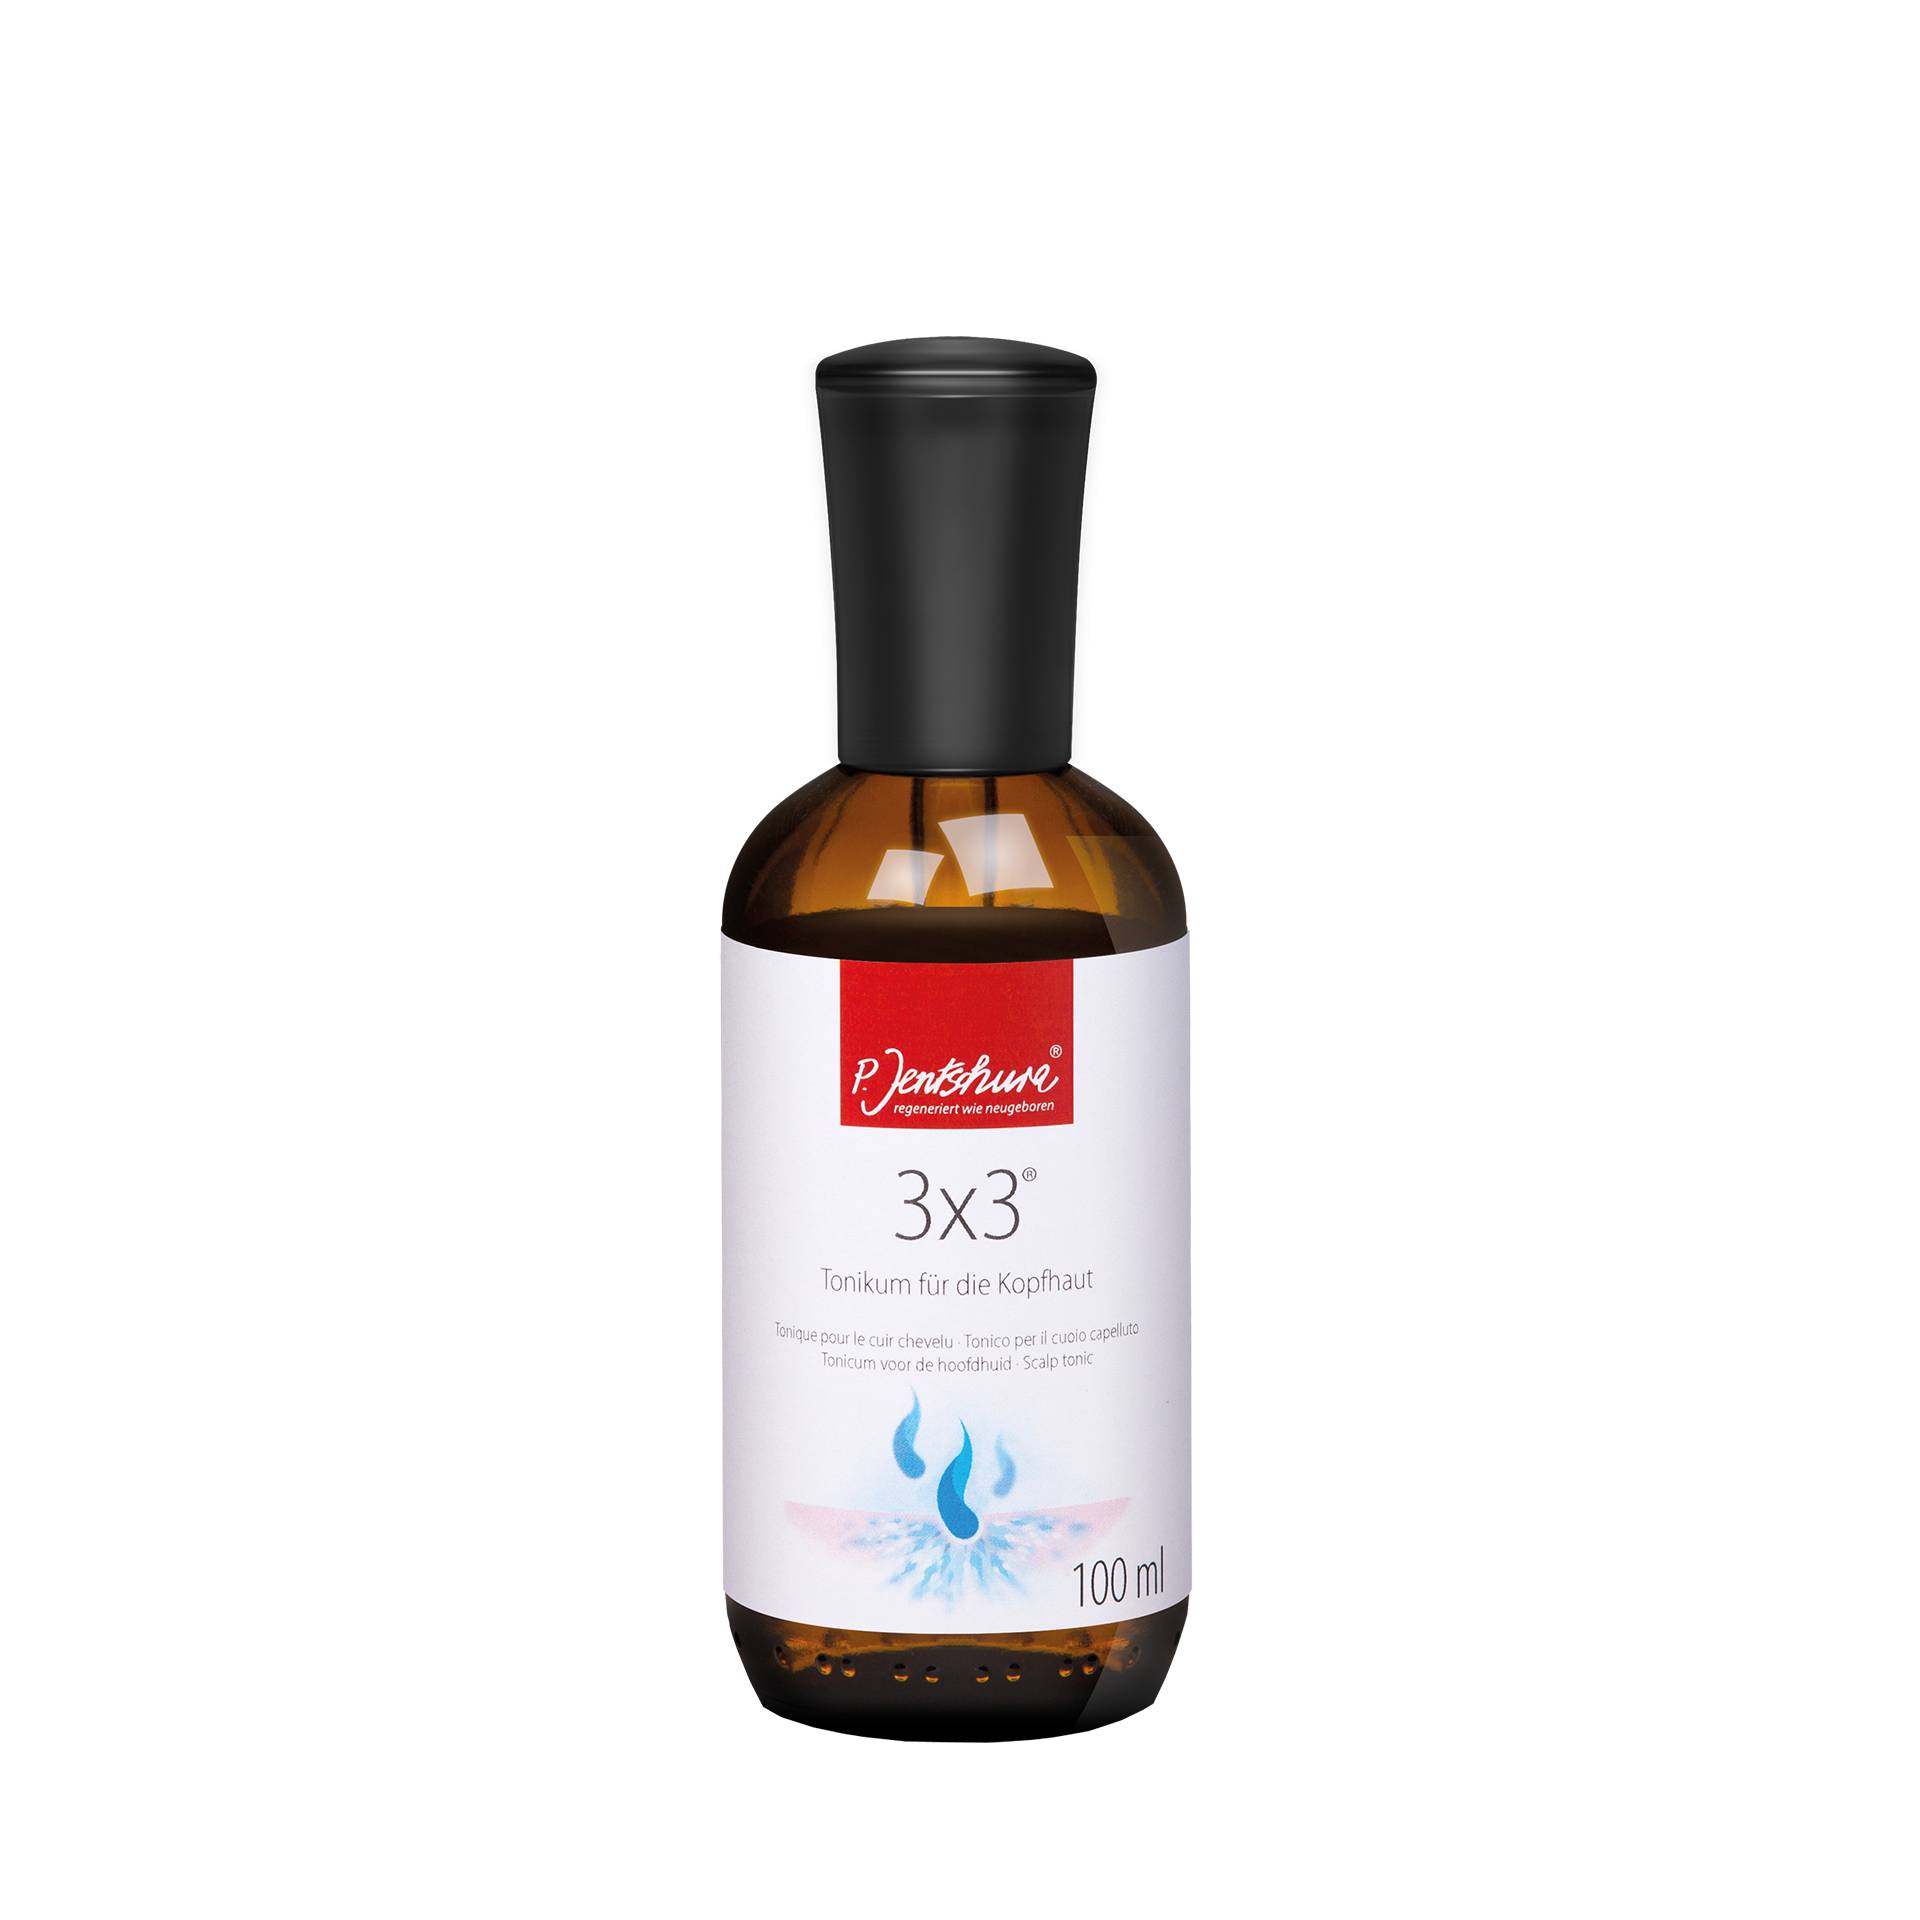 3x3 Tonikum für die Kopfhaut 100 ml - Belebendes Haarwasser mit 21 ätherischen Ölen - vegan - Jentschura von Jentschura